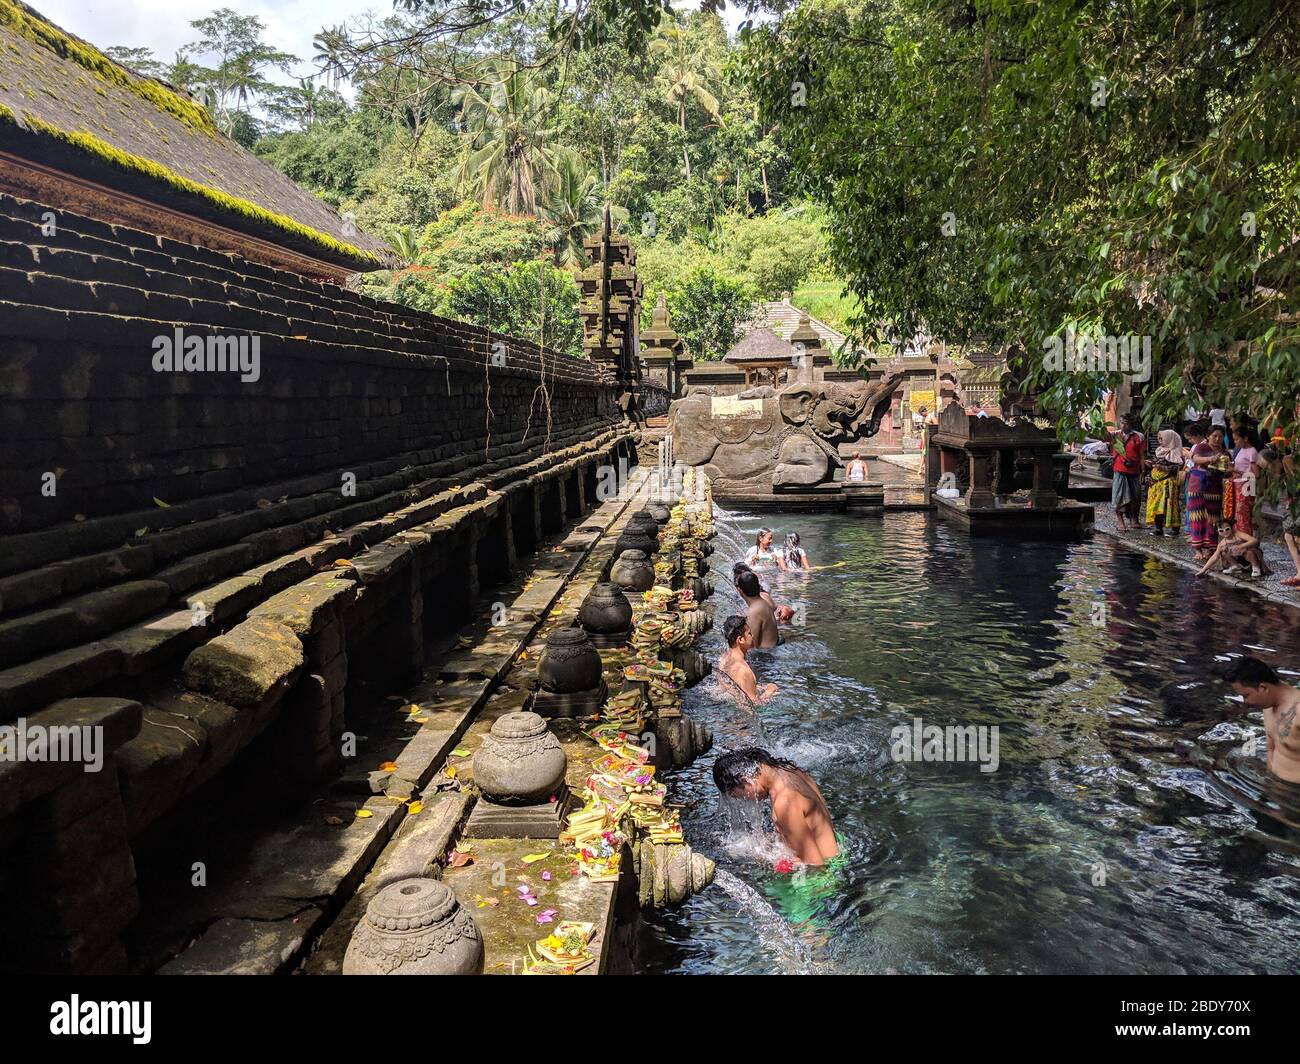 23 APRILE 2019-BALI INDONESIA : persone che prendono un bagno in fontane di acque sacre nel tempio di Tirta empul. Religione e cultura. Foto Stock